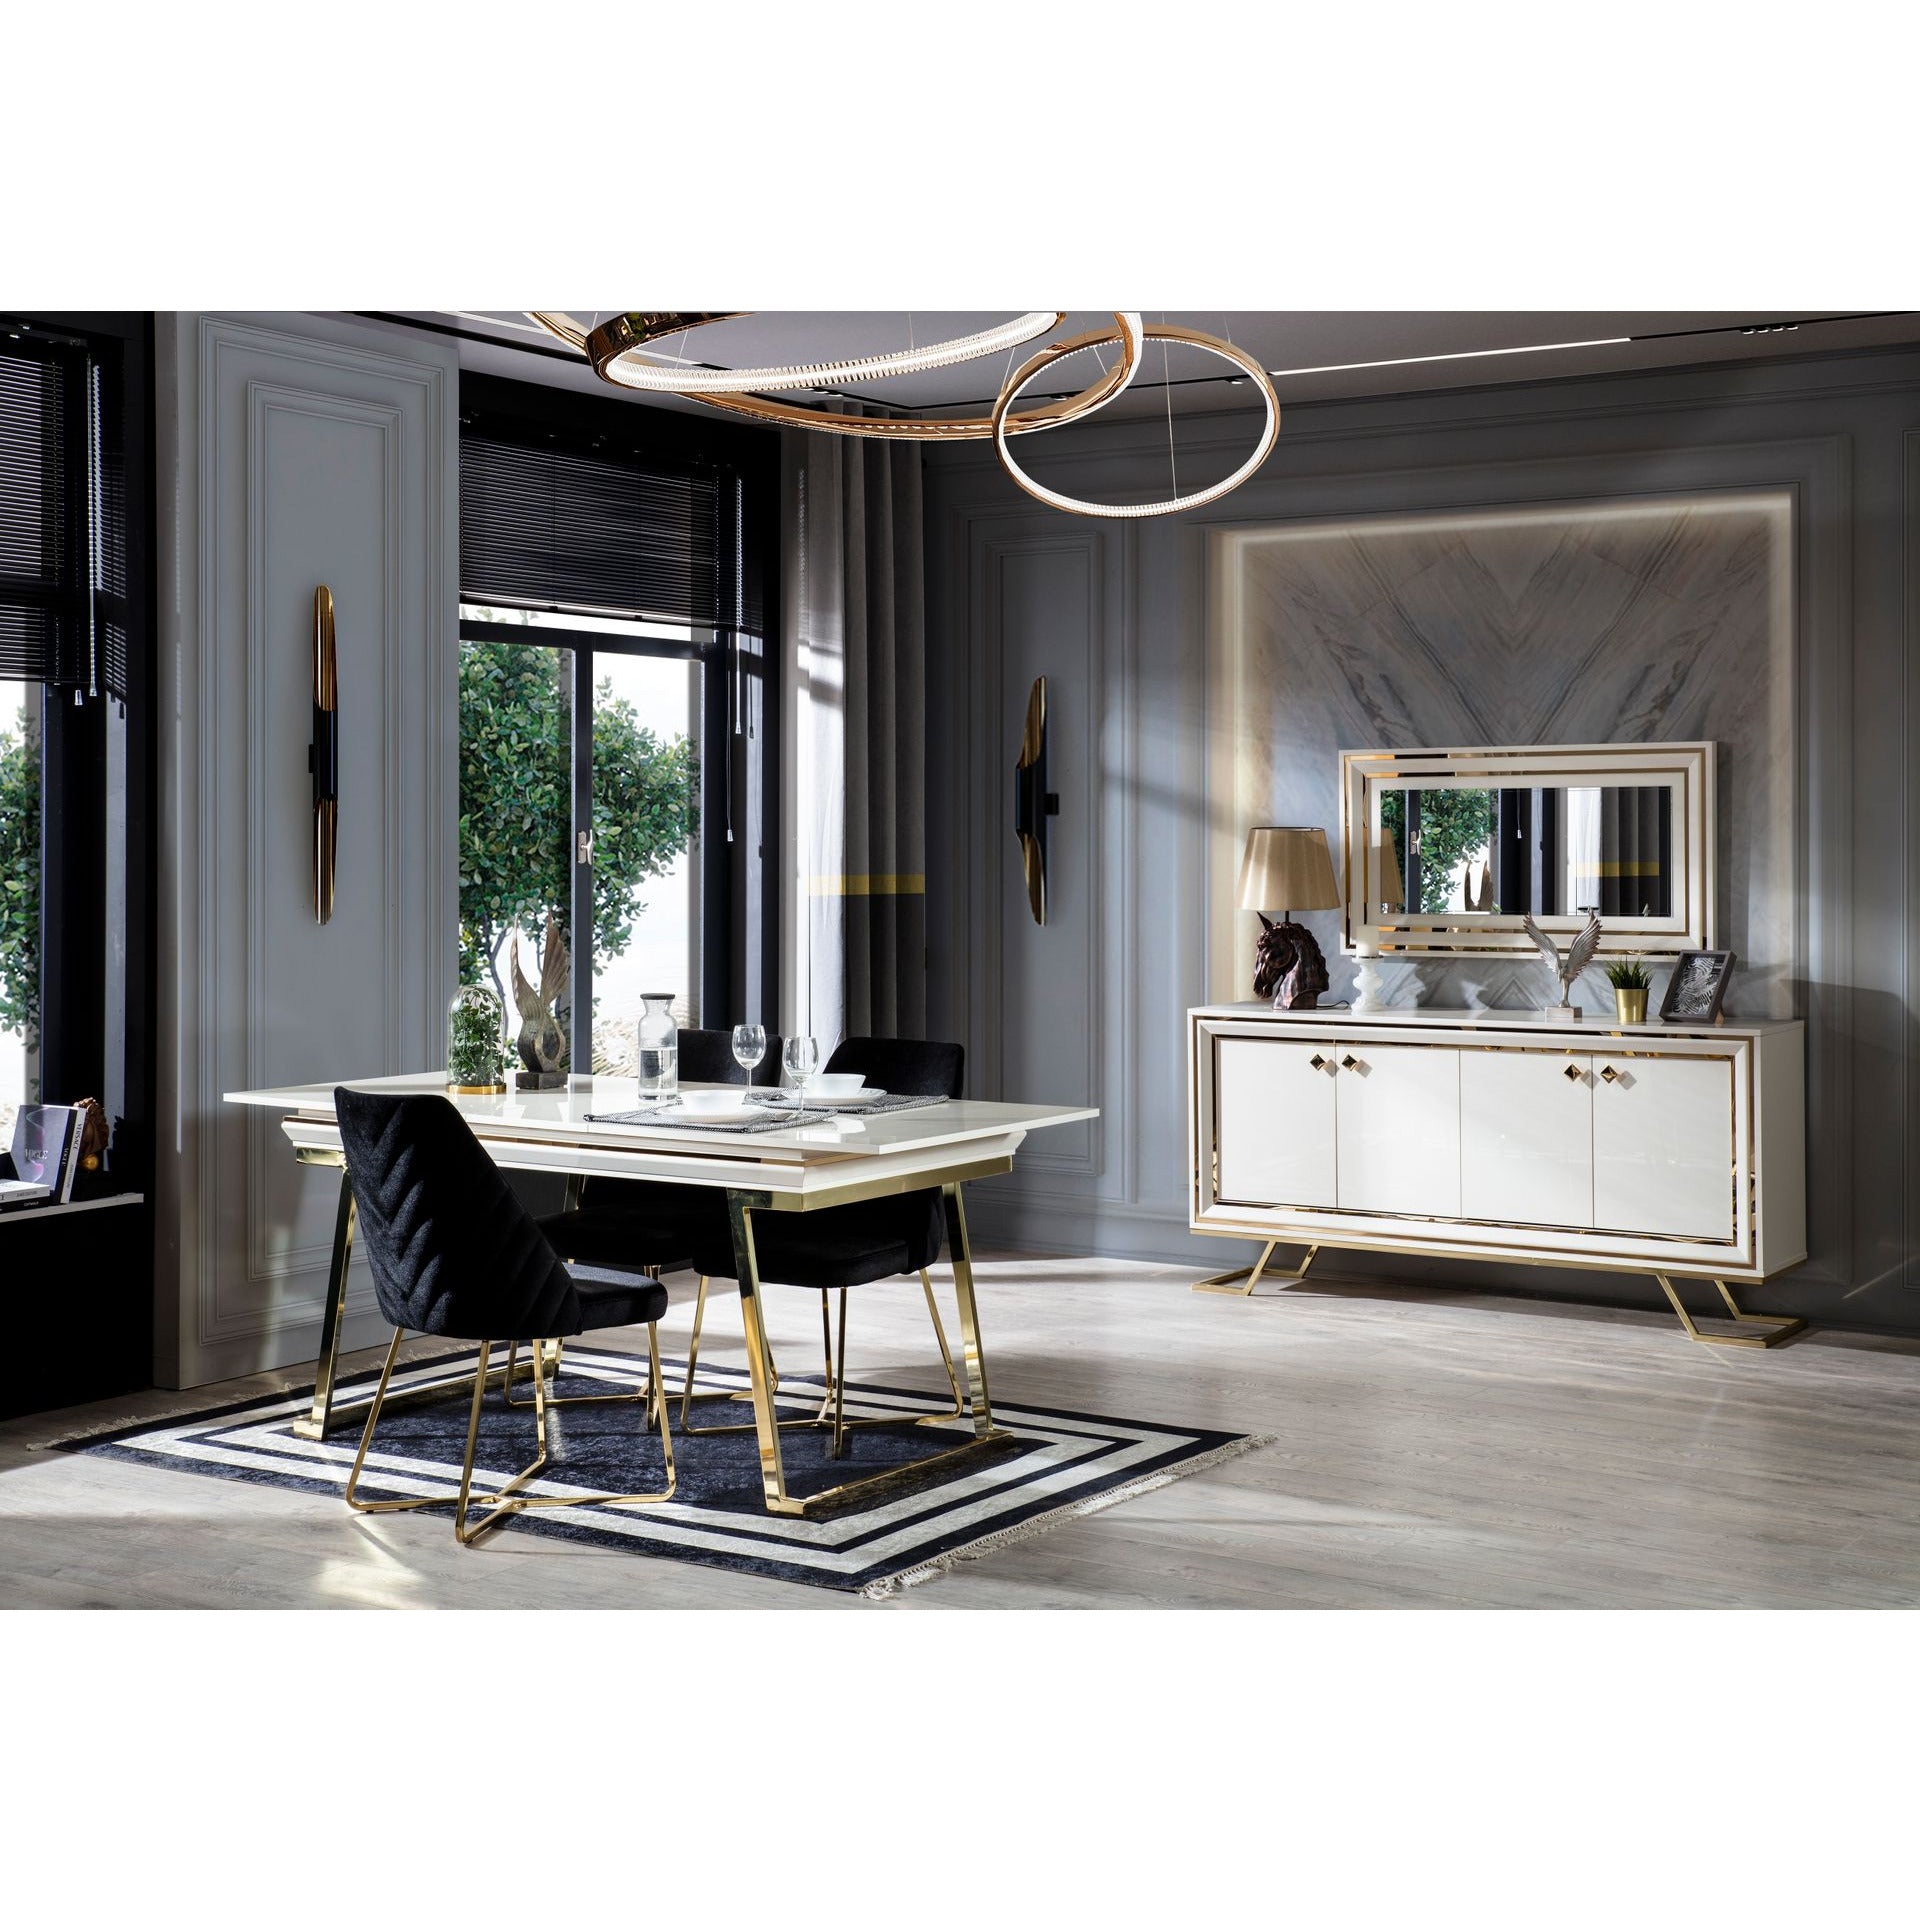 Palermo Förlängningsbart Matbord - LINE Furniture Group